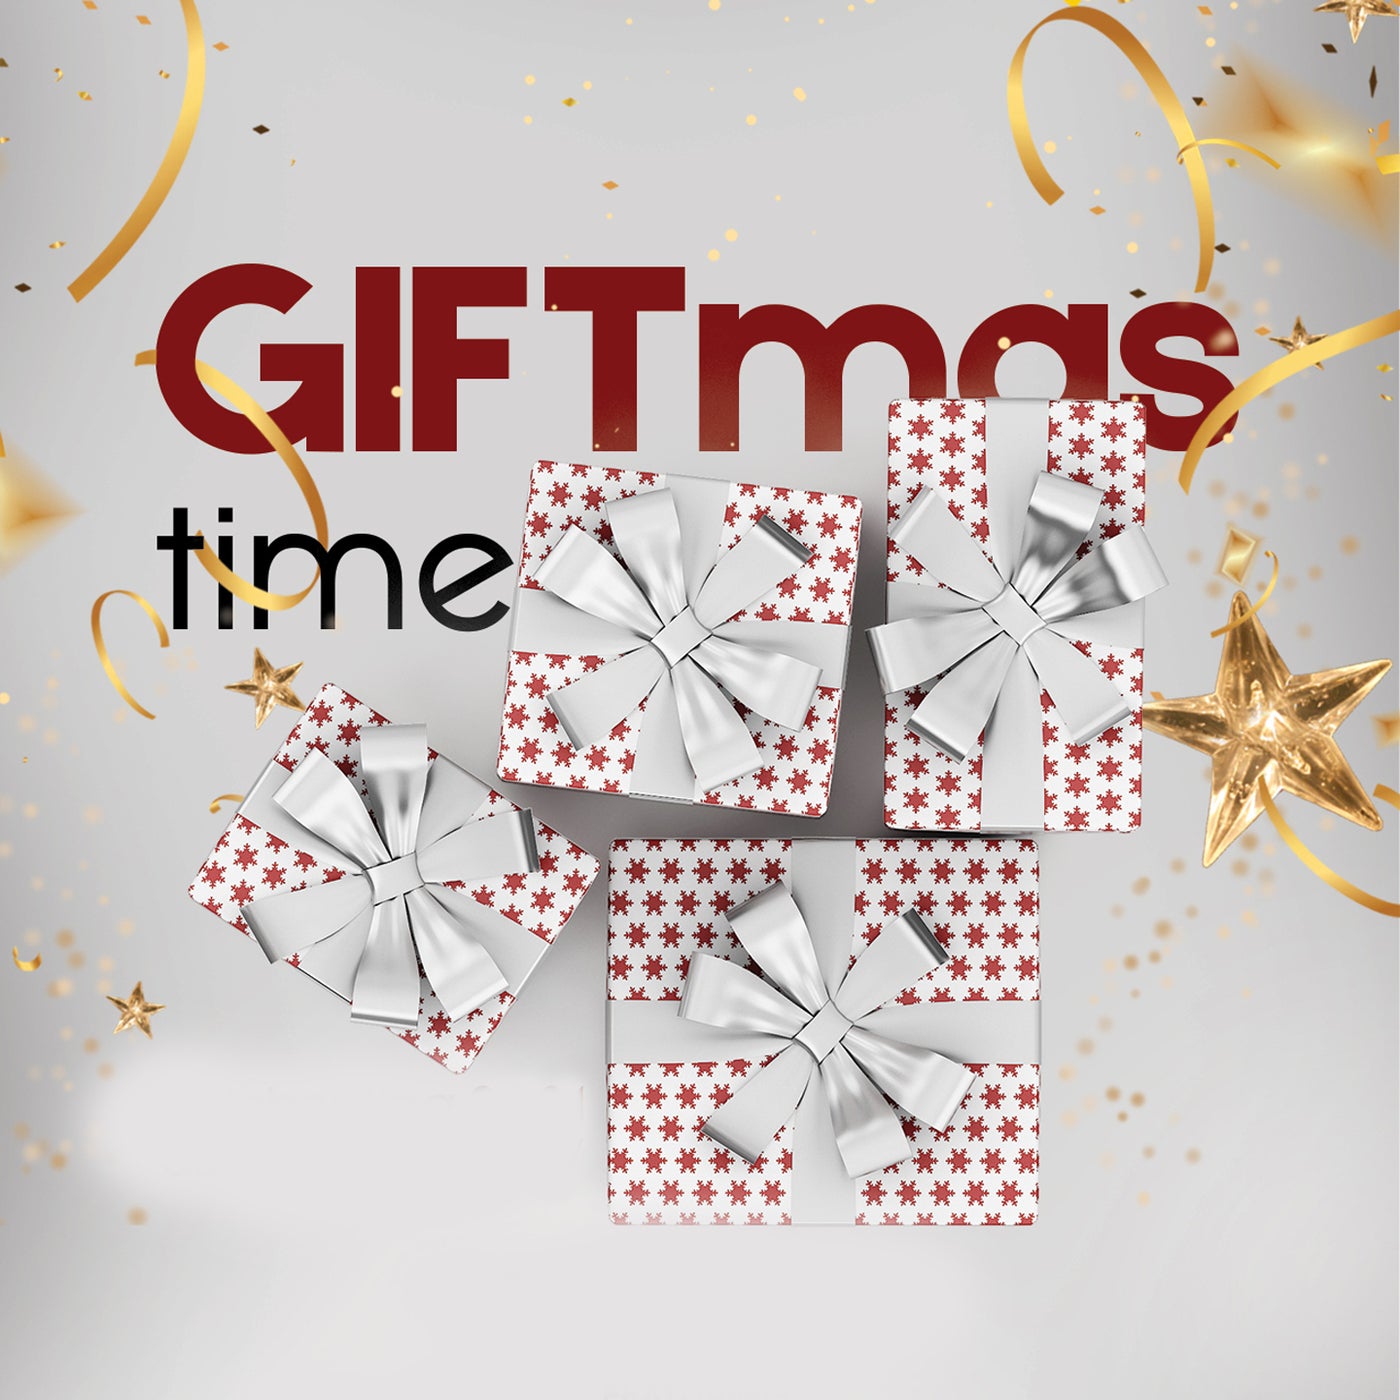 Giftmas Time